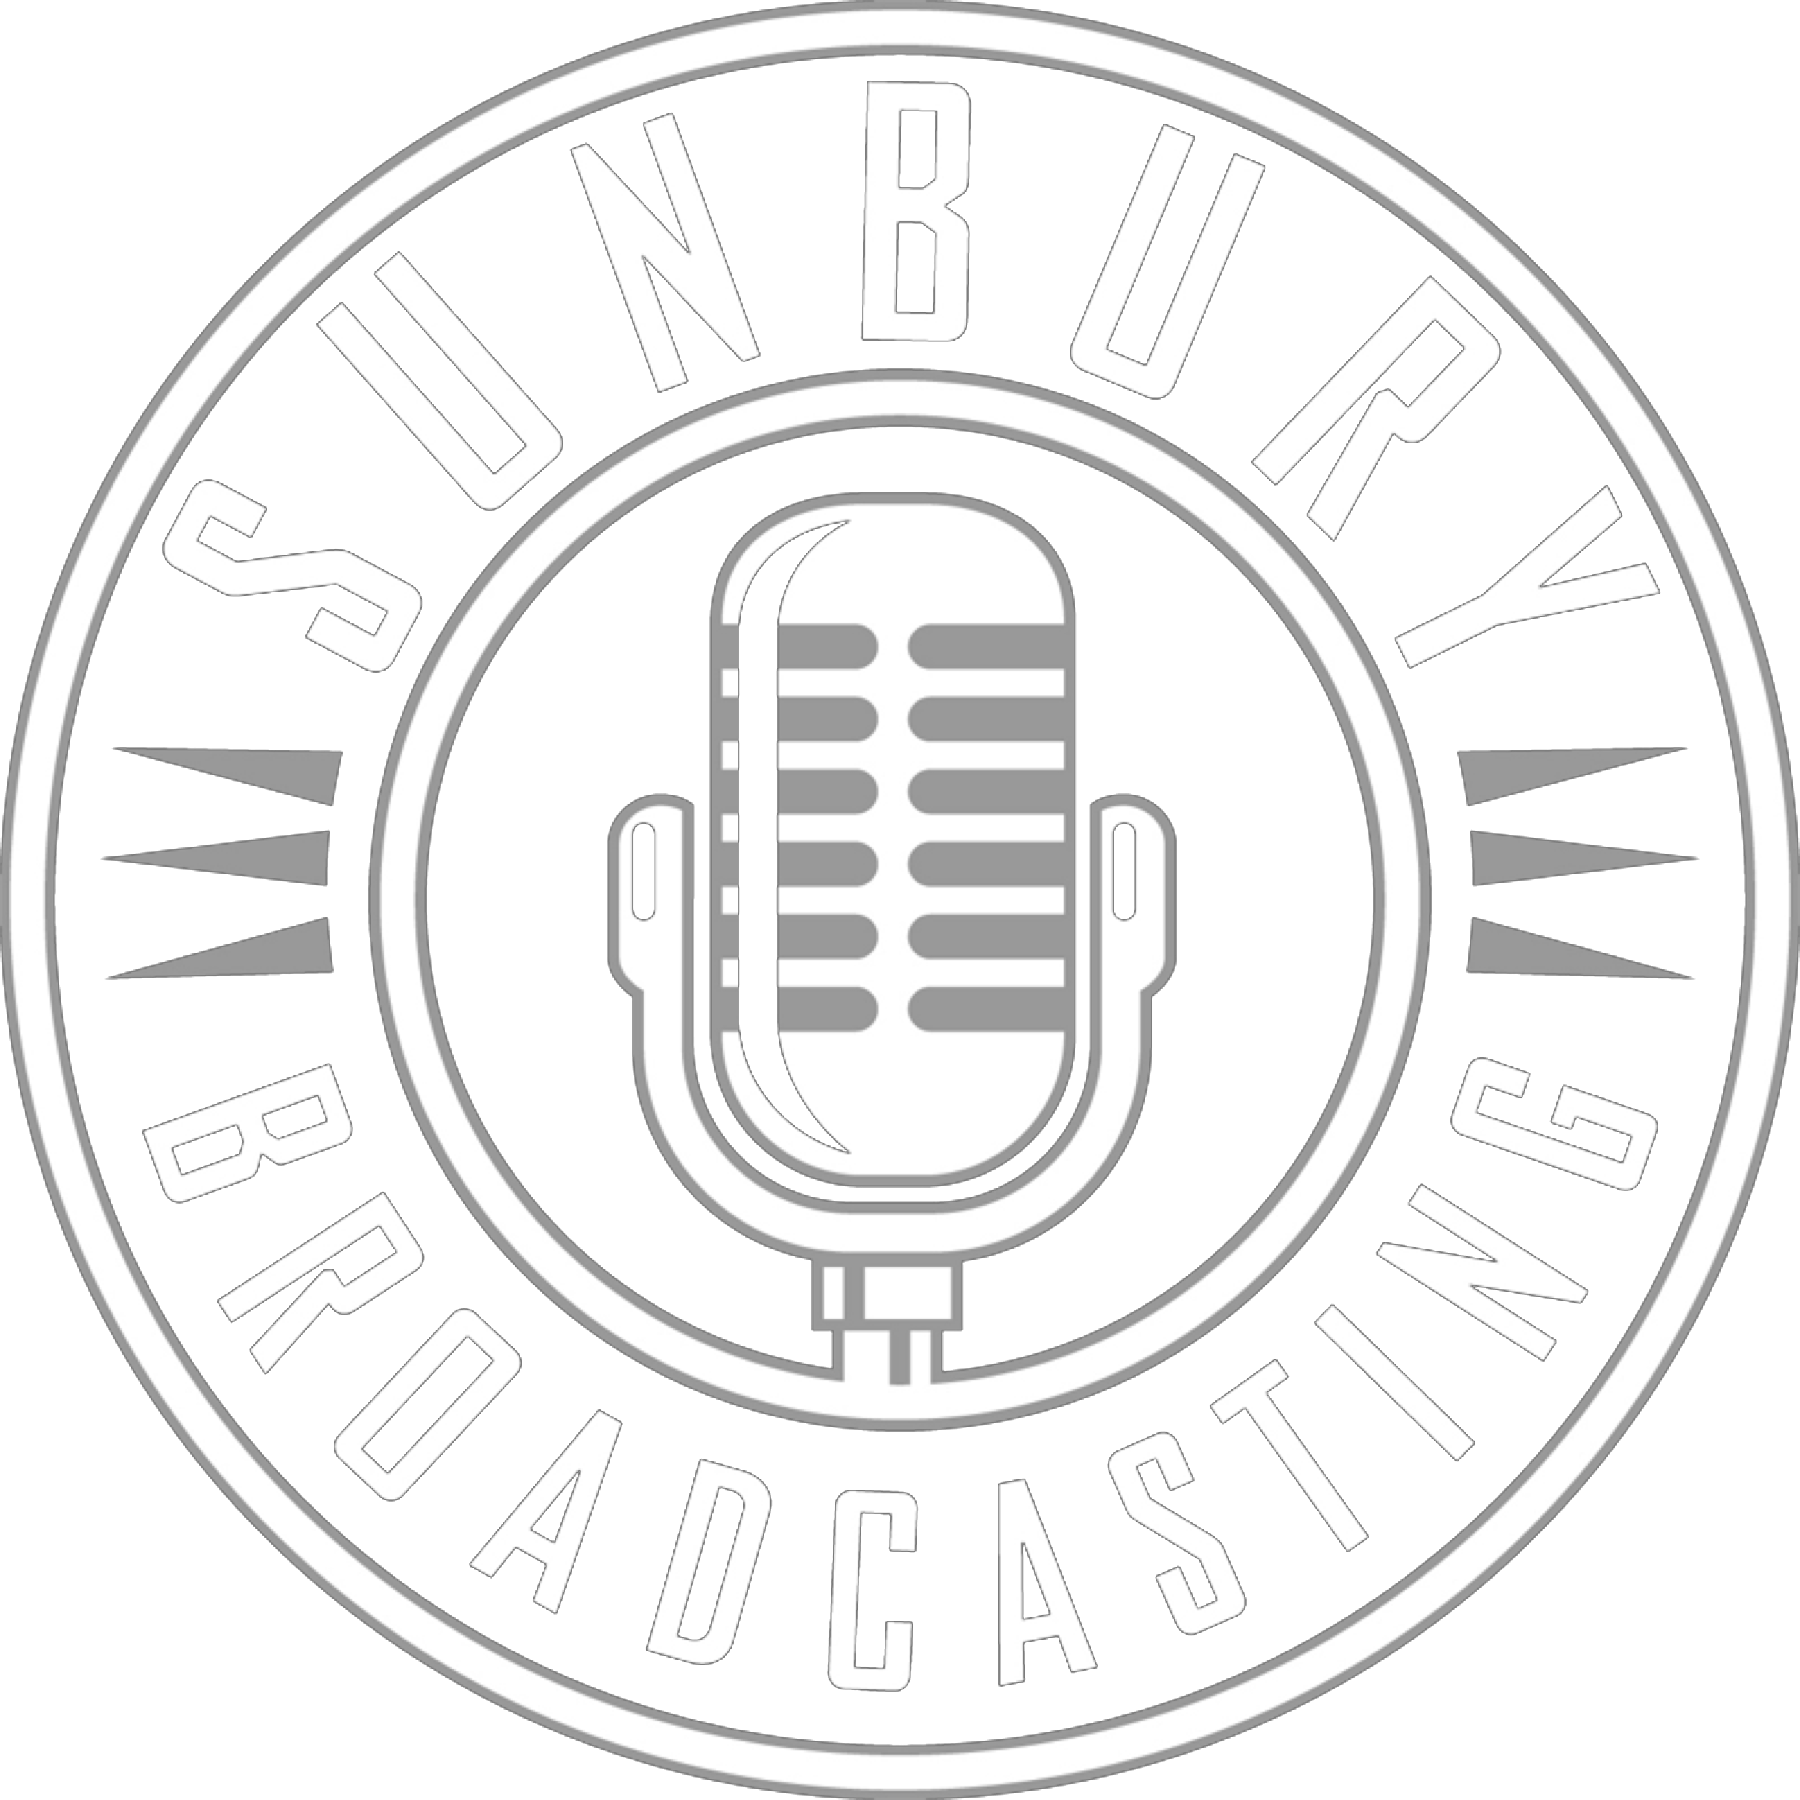 171 Sunbury Broadcasting